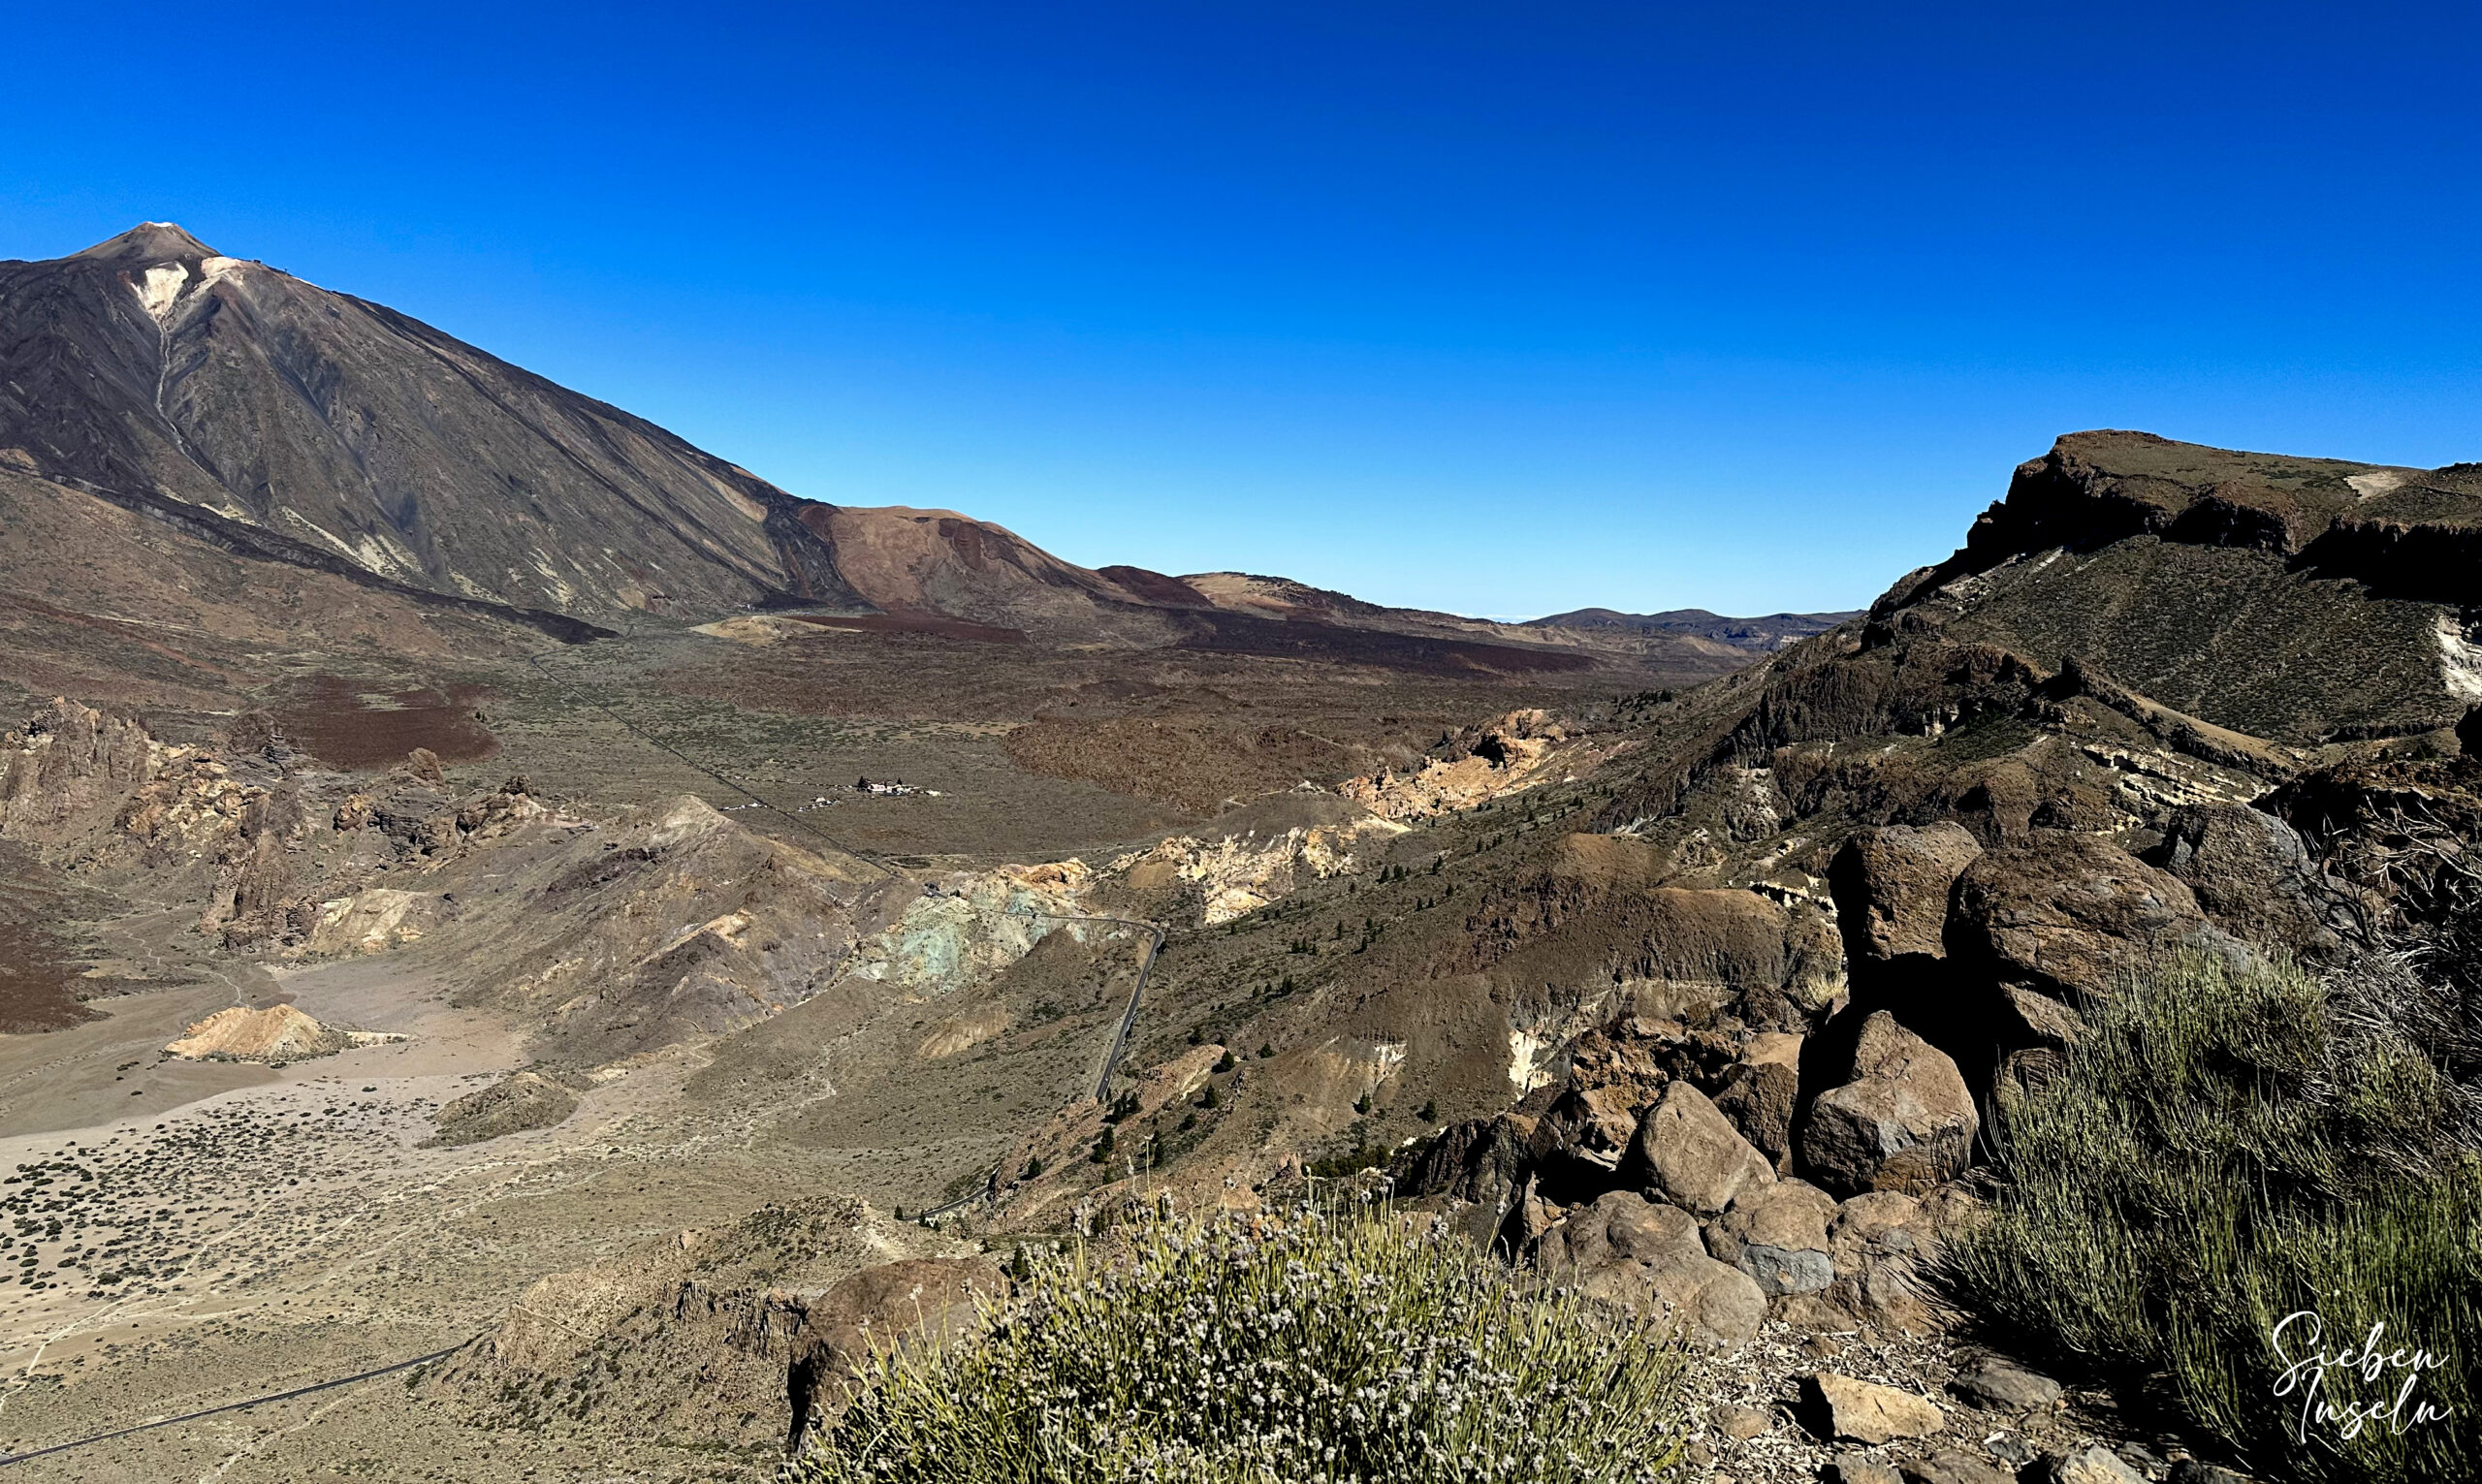 View over the Caldera de Las Cañadas to the Teide from the ridge path S-31